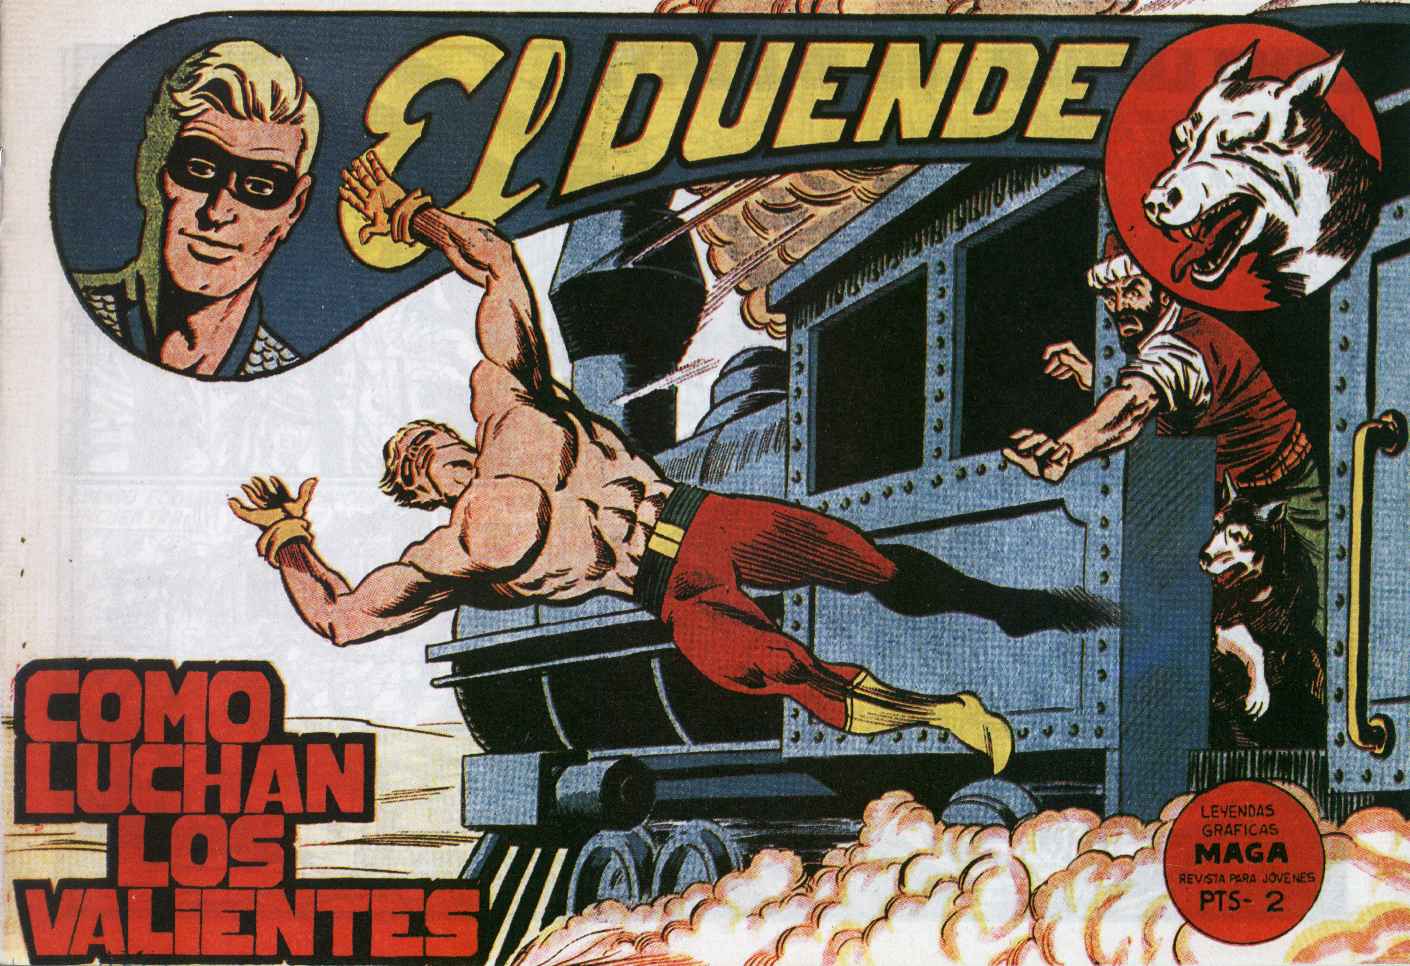 Comic Book Cover For El Duende 25 - Como luchan los valientes